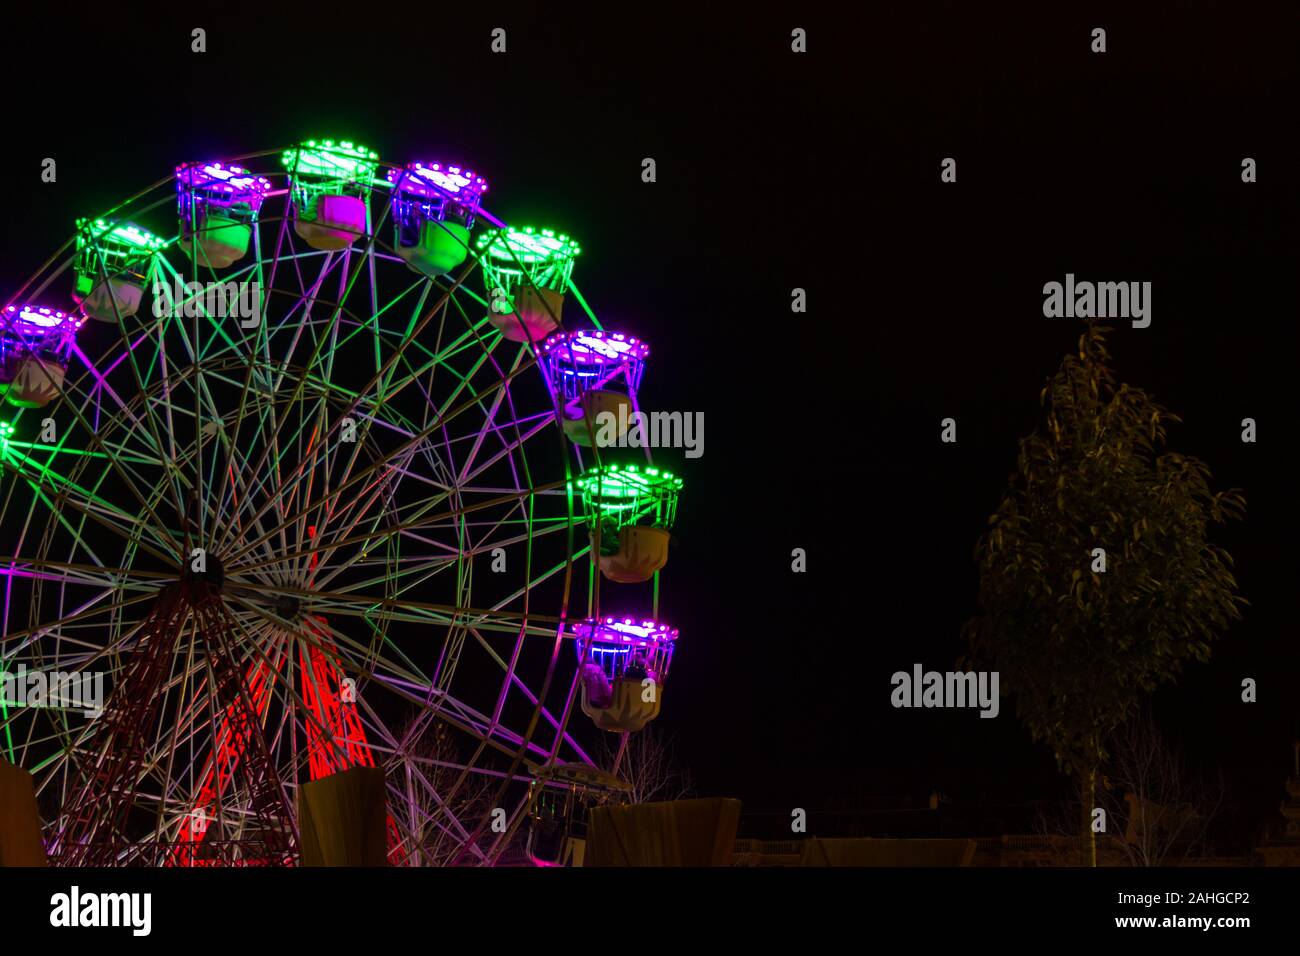 Grande roue avec des lumières fluo colorées en hiver Noël nuit à San Sebastian, Pays basque. Concept d'attraction amusante en plein air Banque D'Images